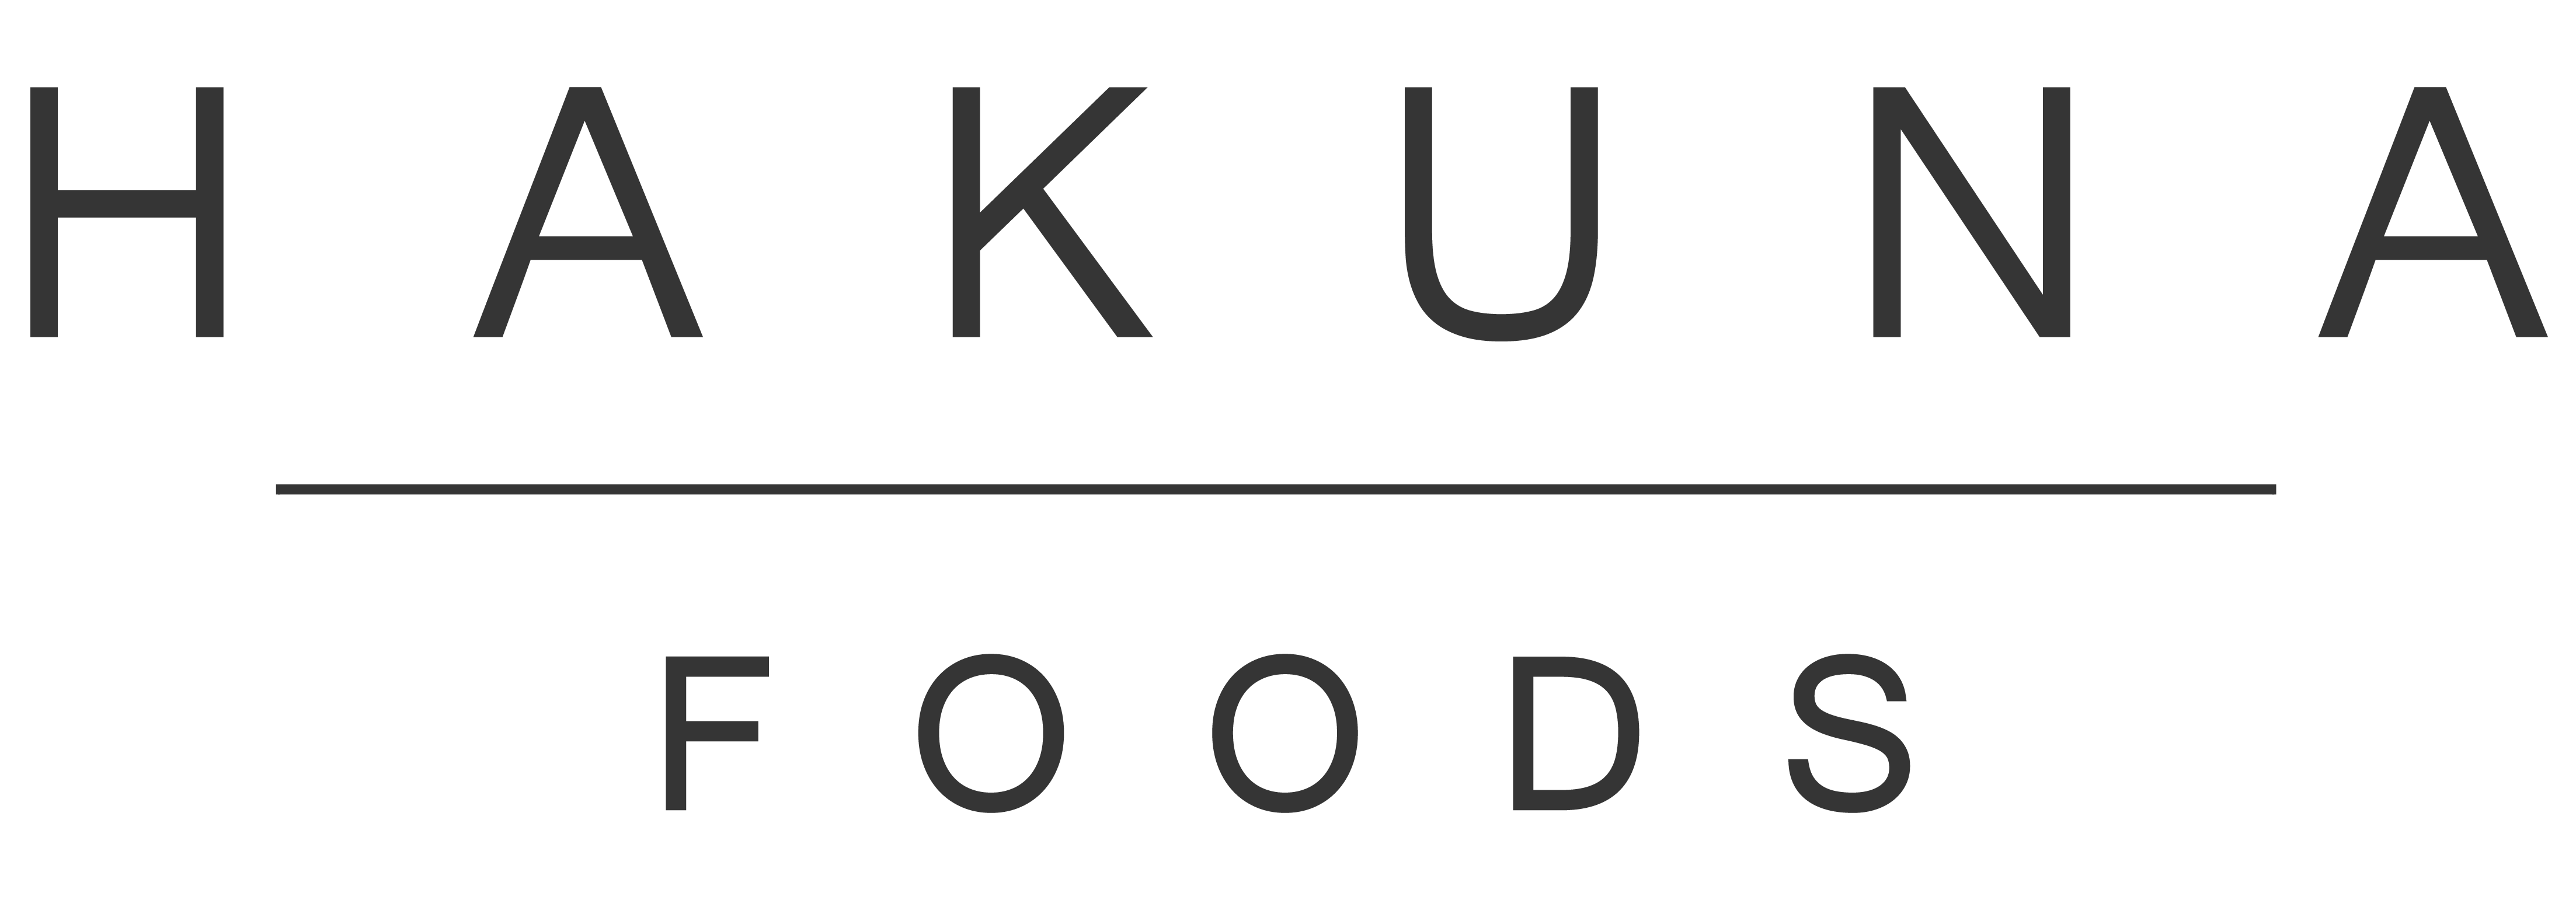 Hakuna logo small